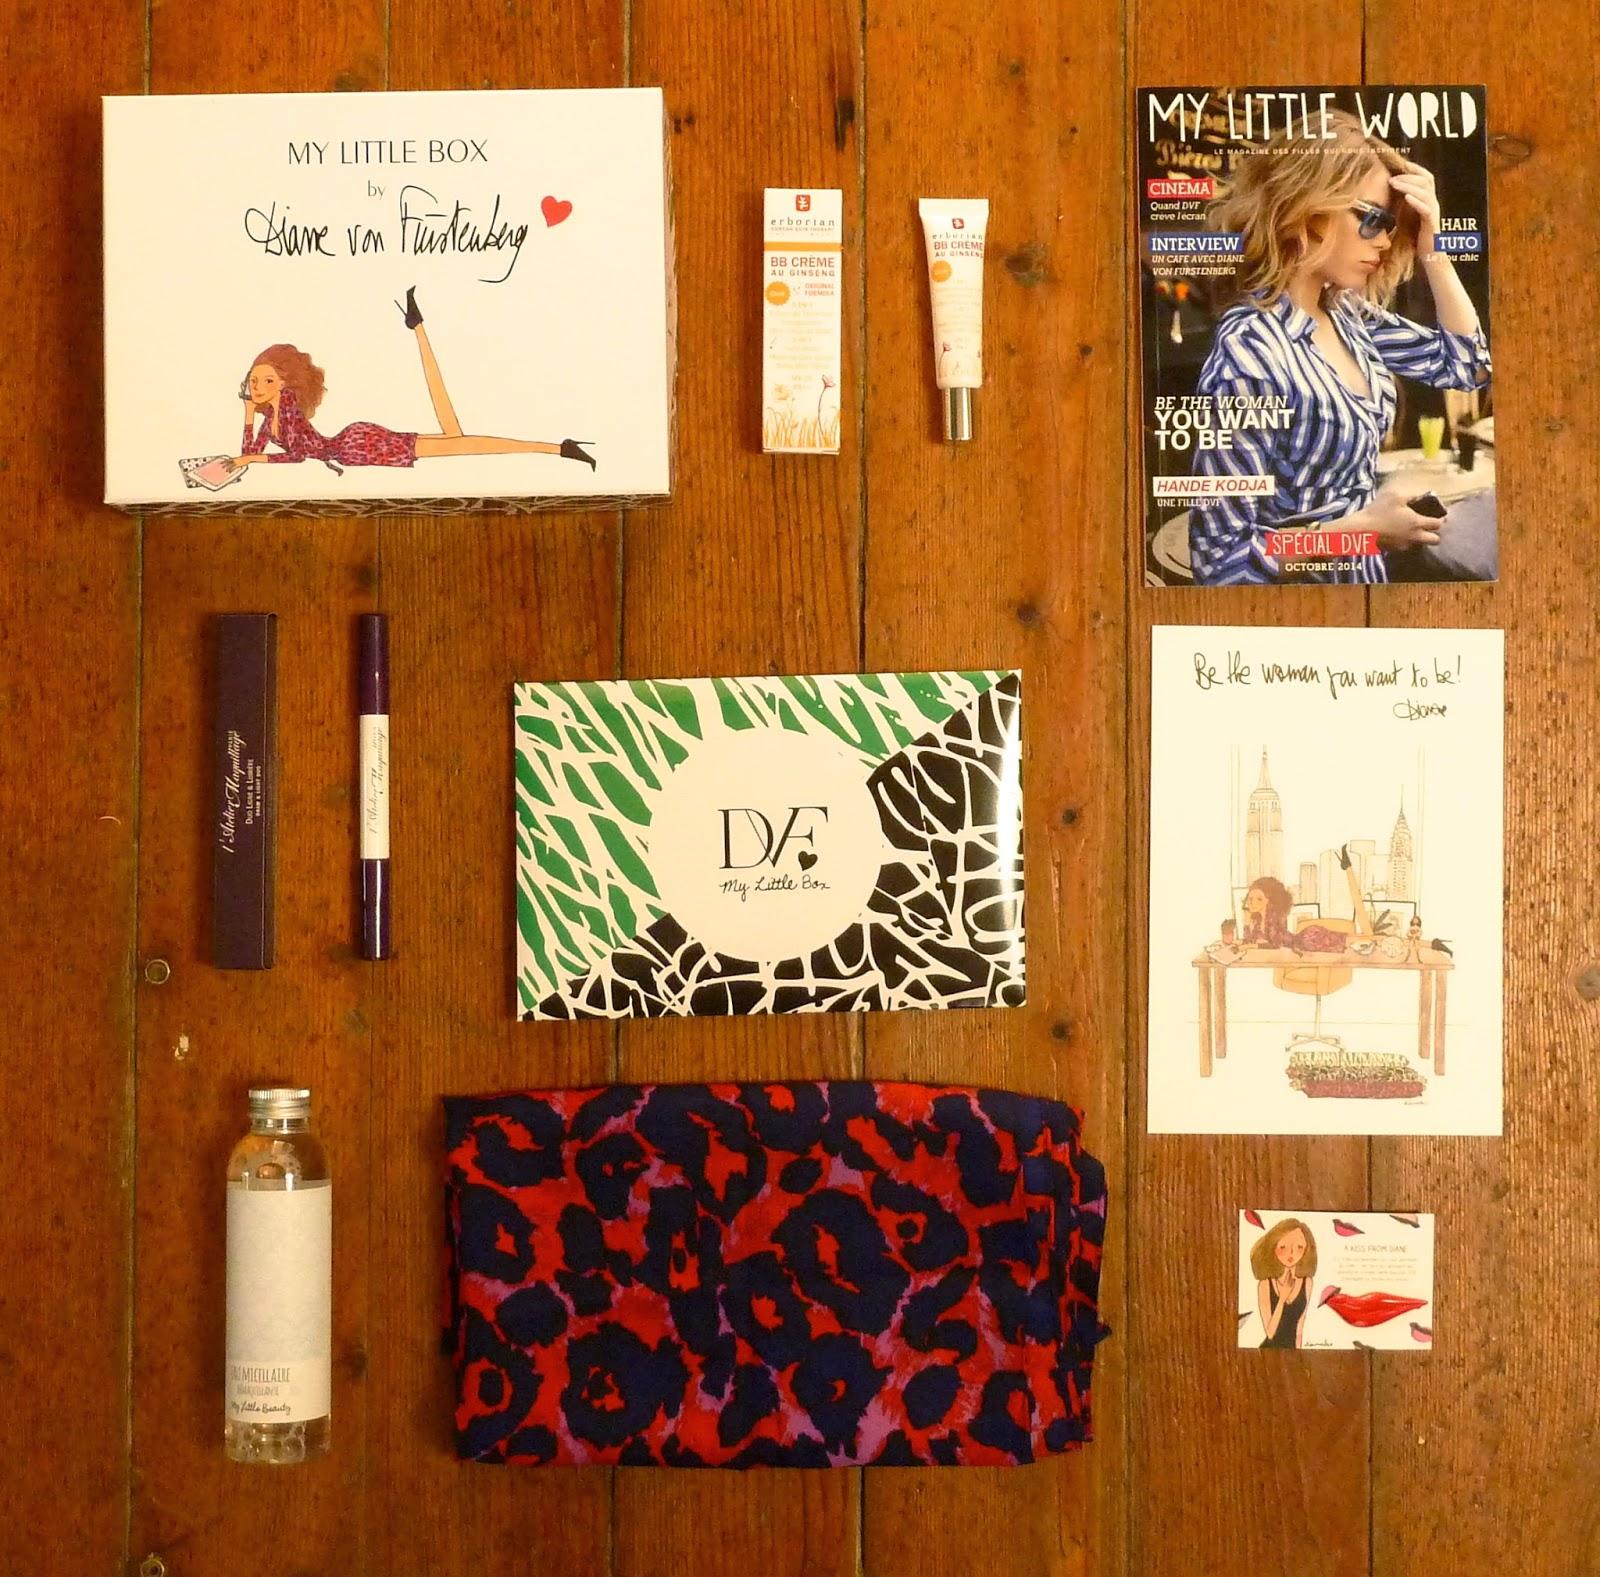 My Little Box by Diane Von Furstenberg - Octobre 2014